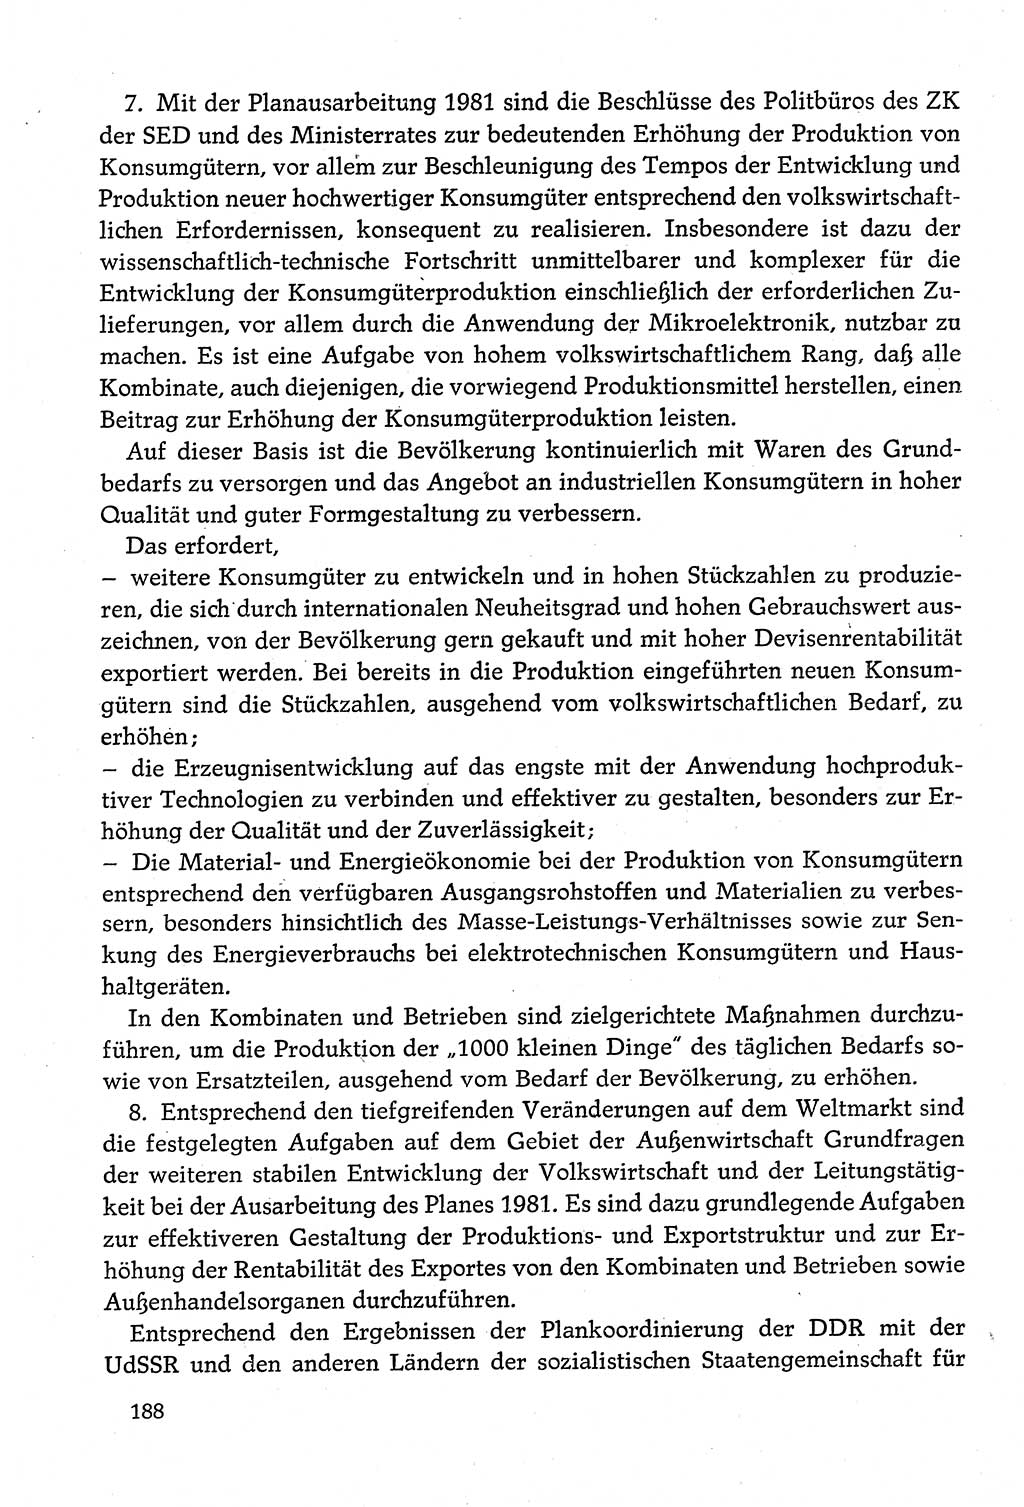 Dokumente der Sozialistischen Einheitspartei Deutschlands (SED) [Deutsche Demokratische Republik (DDR)] 1980-1981, Seite 188 (Dok. SED DDR 1980-1981, S. 188)